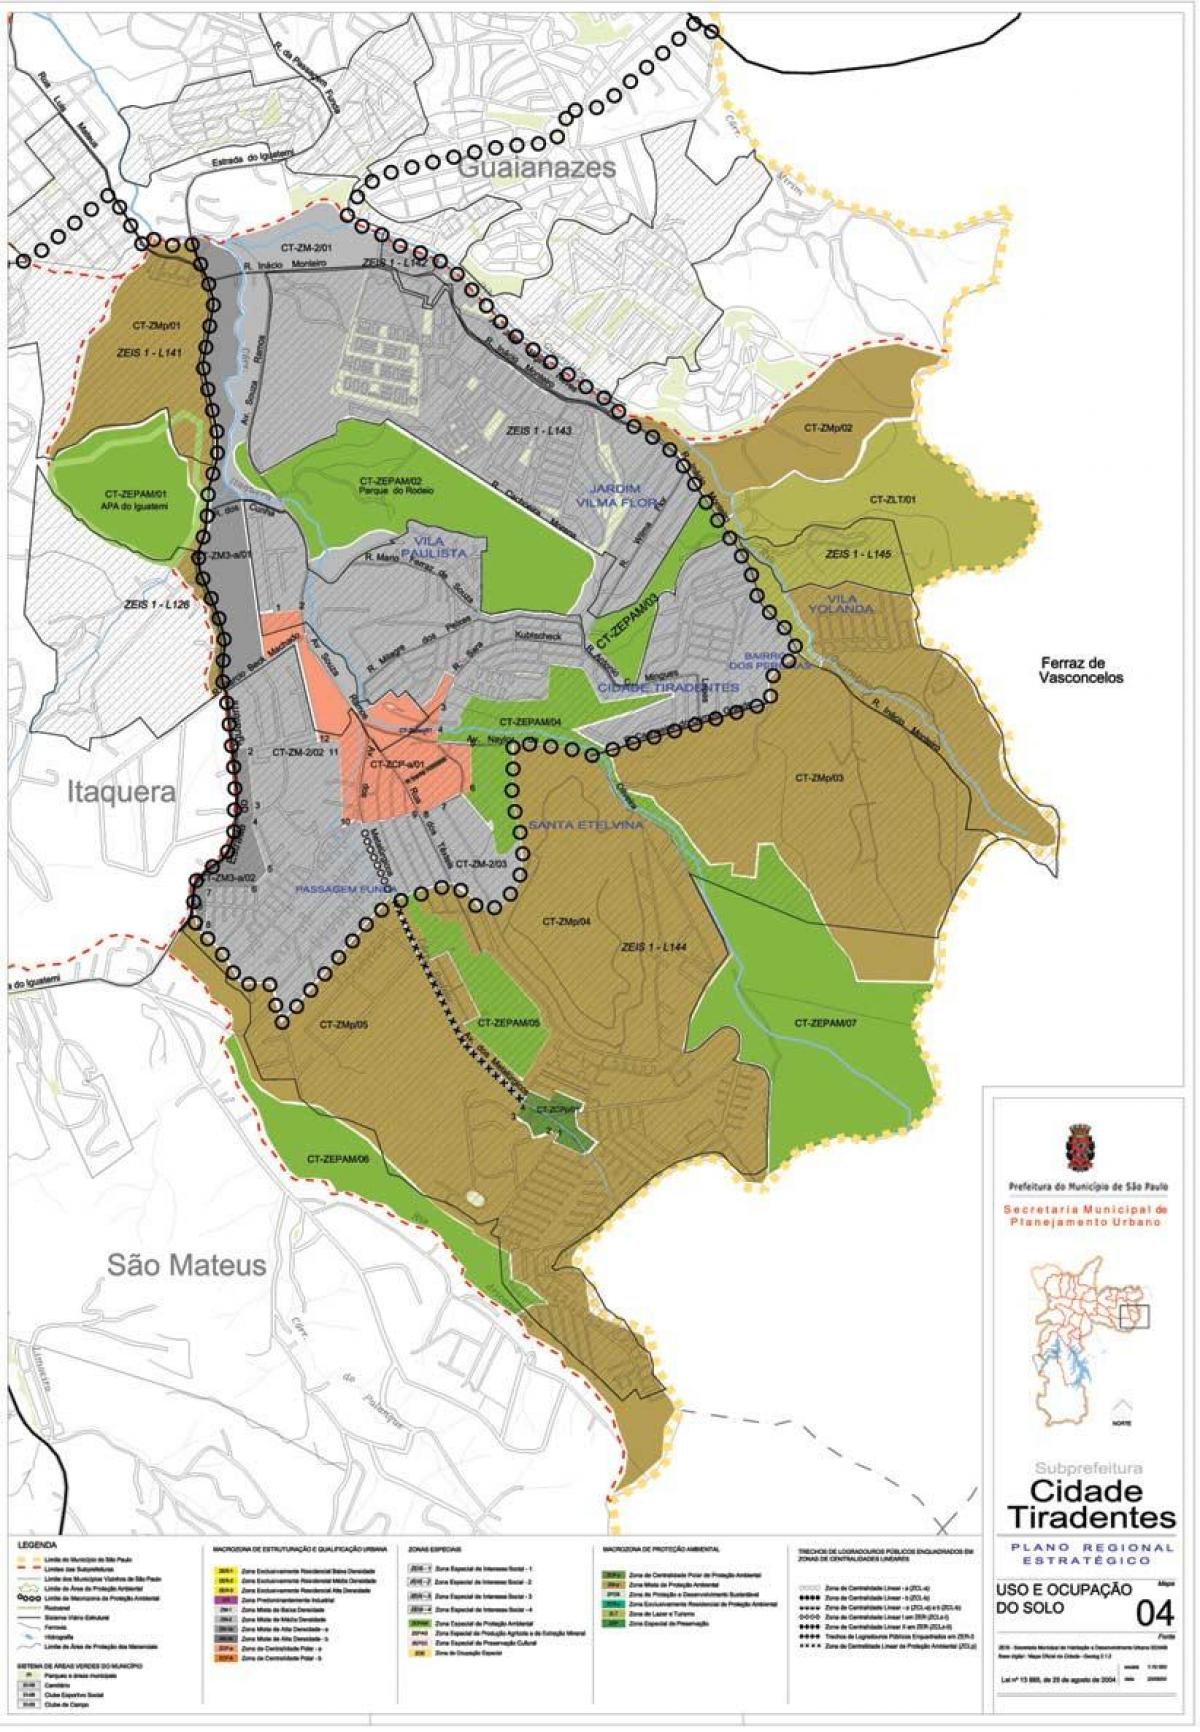 Mapa ng Cidade Tiradentes São Paulo - Okupasyon ng lupa